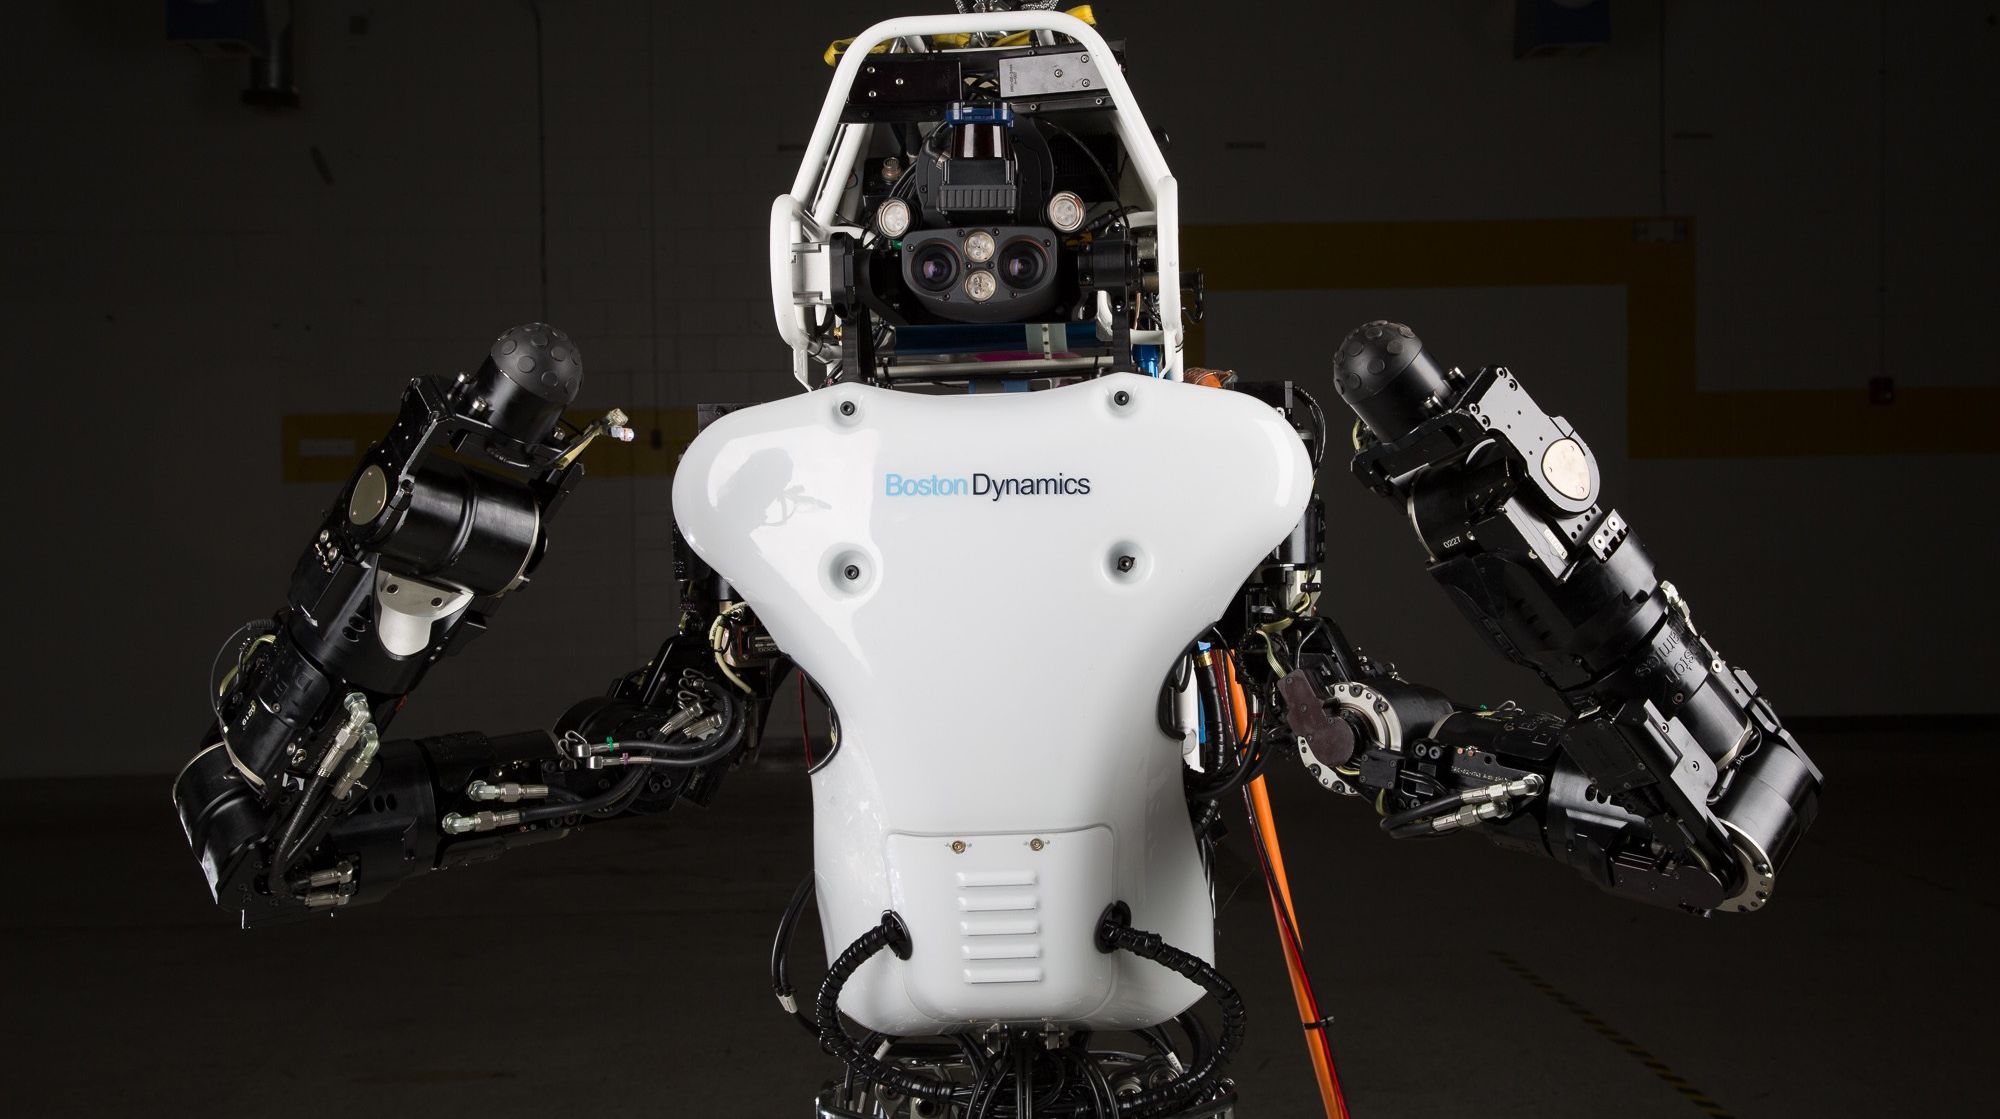 #відео дня | Boston Dynamics навчає робота Atlas основ паркуру